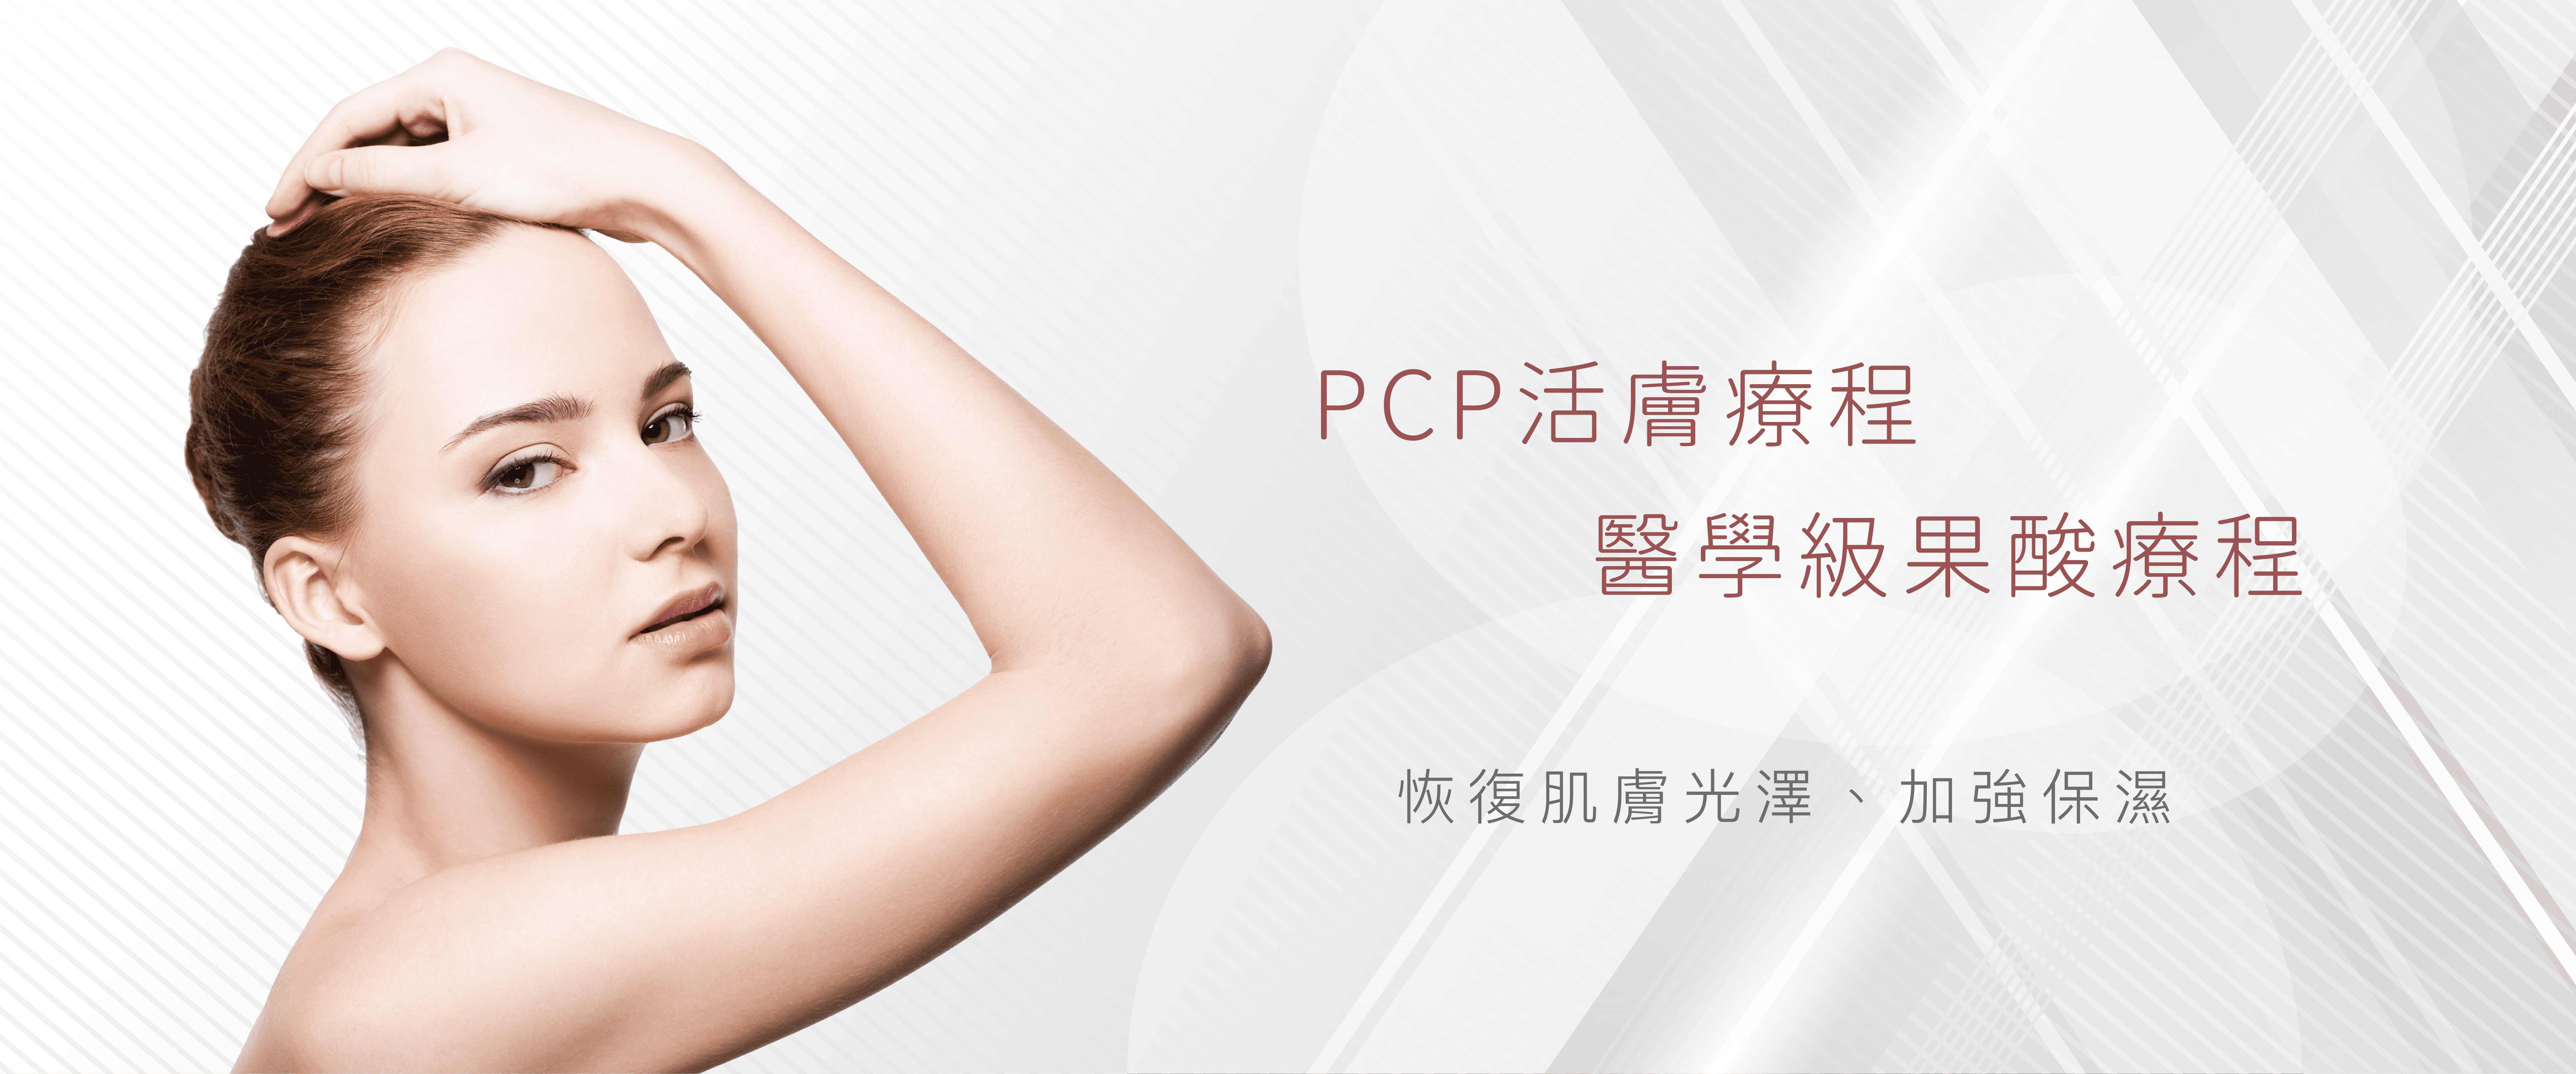 PCP活膚療程